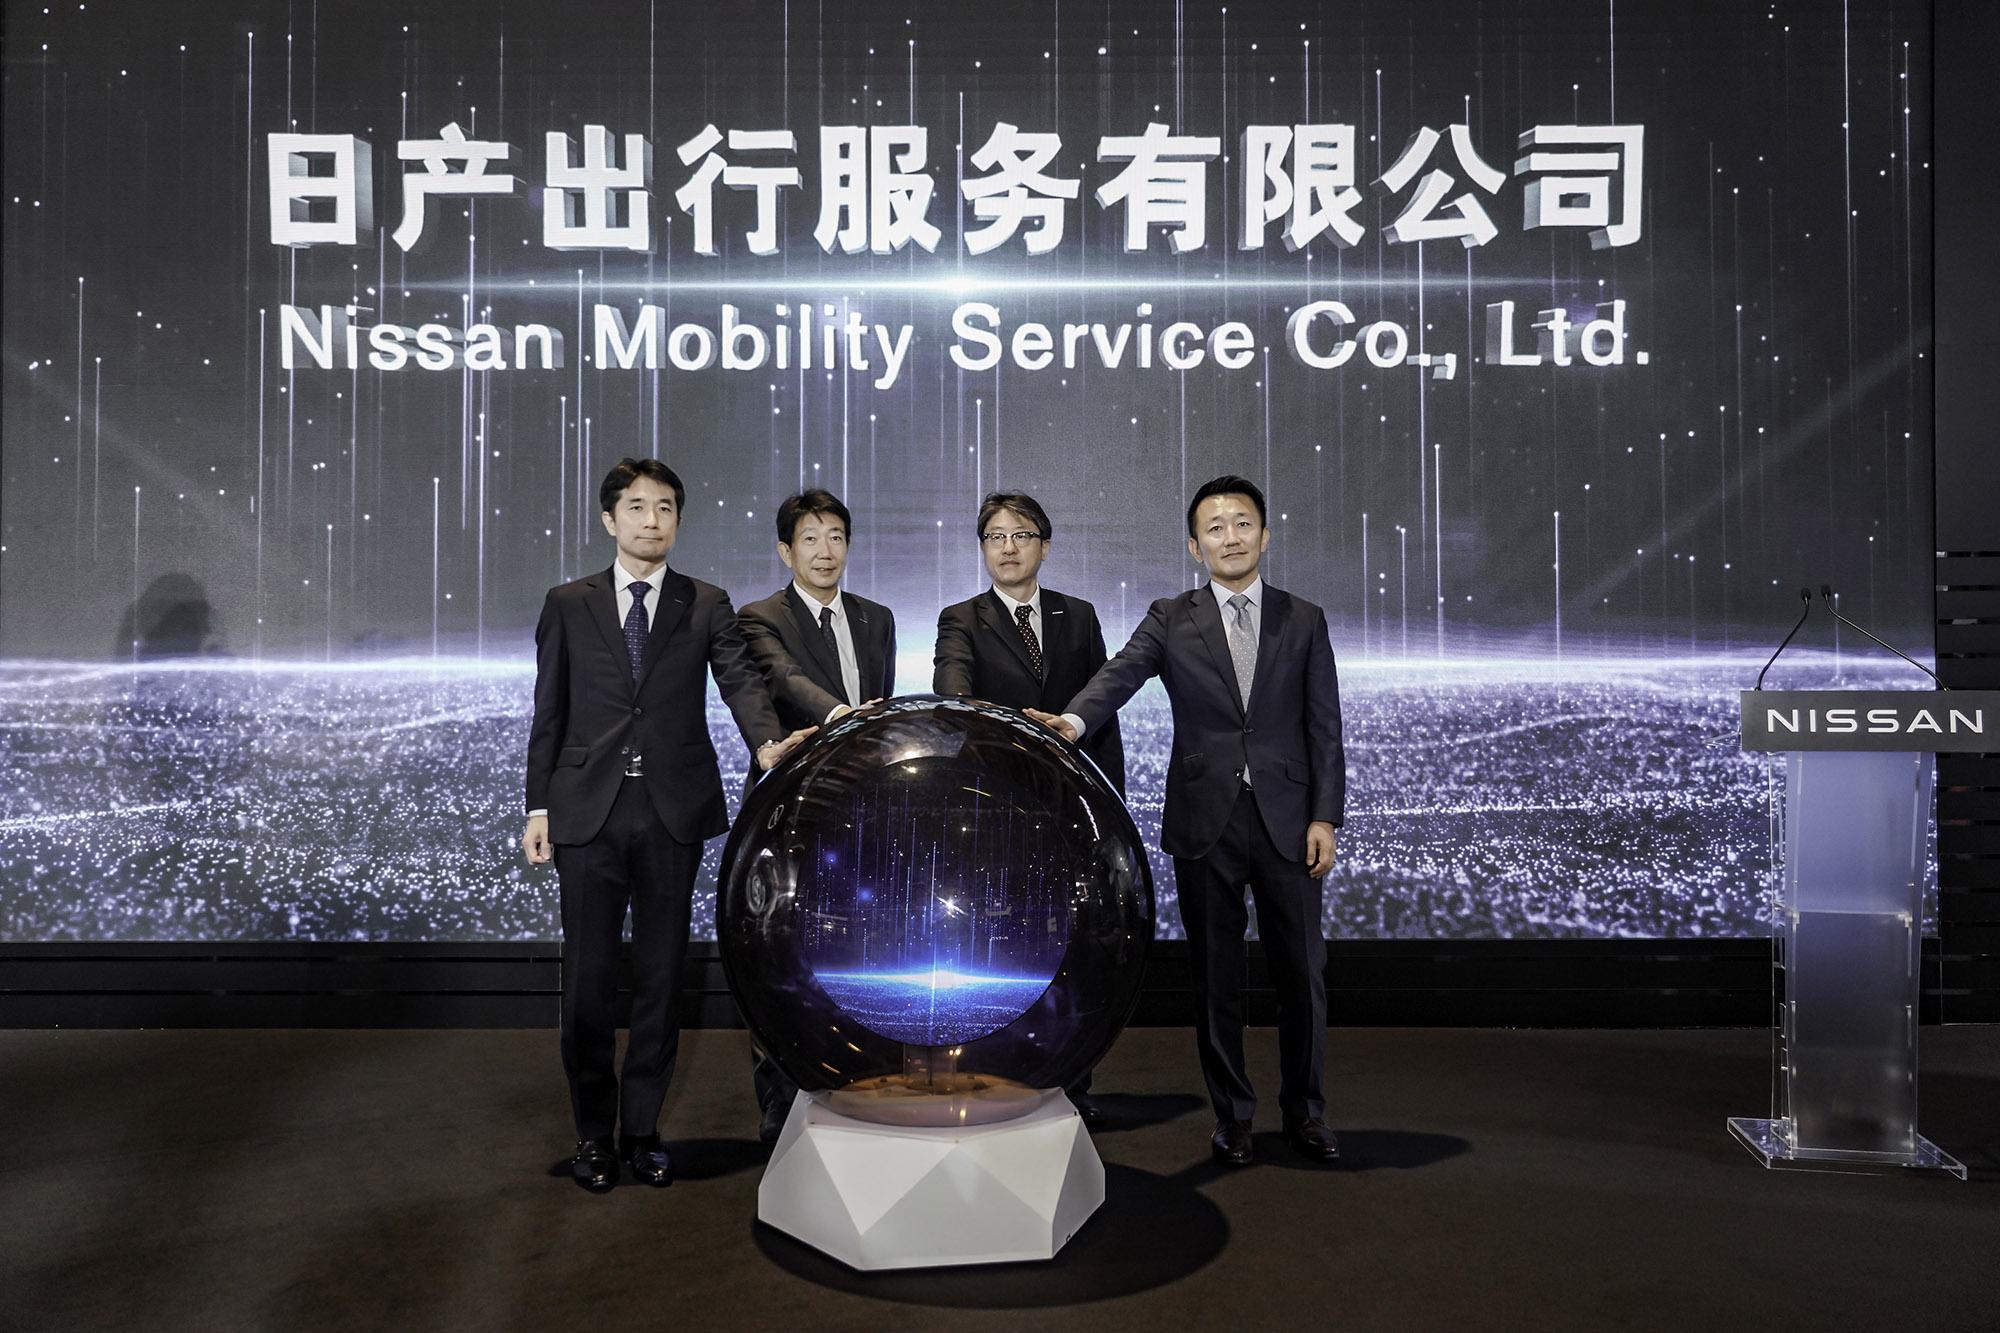 Η Nissan ιδρύει νέα εταιρεία υπηρεσιών κινητικότητας στην Κίνα